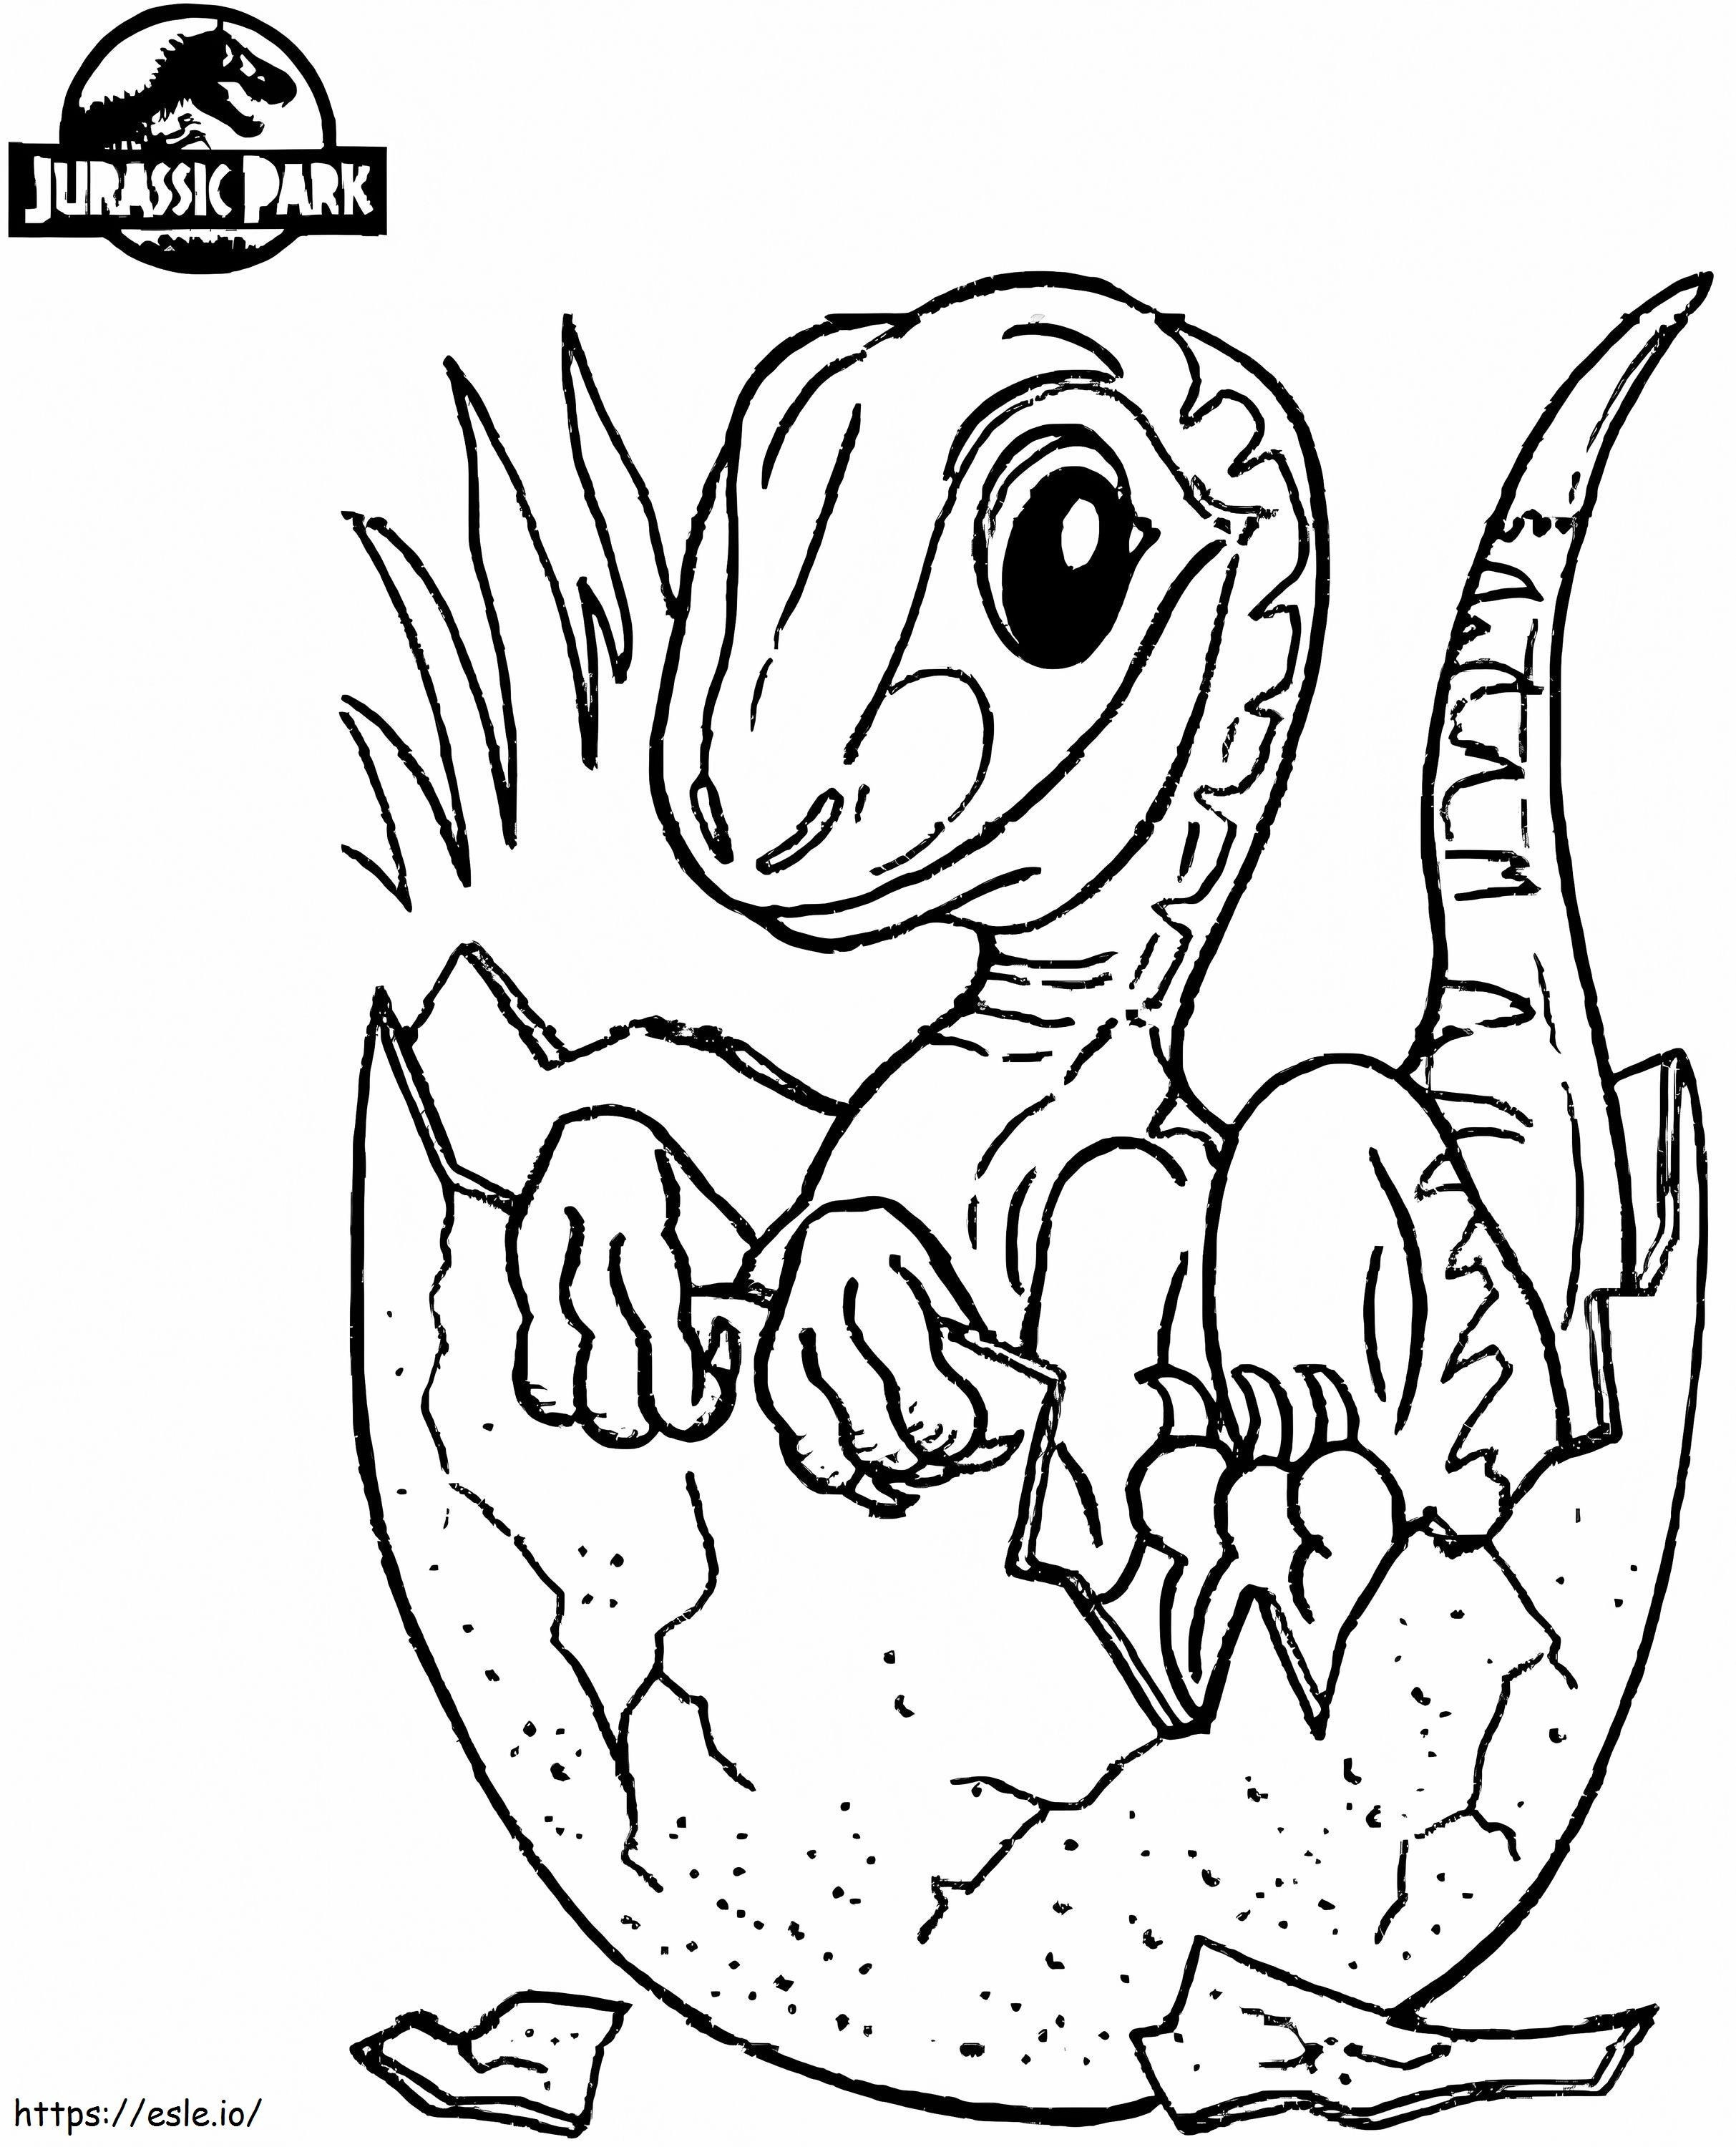 Coloriage Bébé dinosaure dans Jurassic World à imprimer dessin